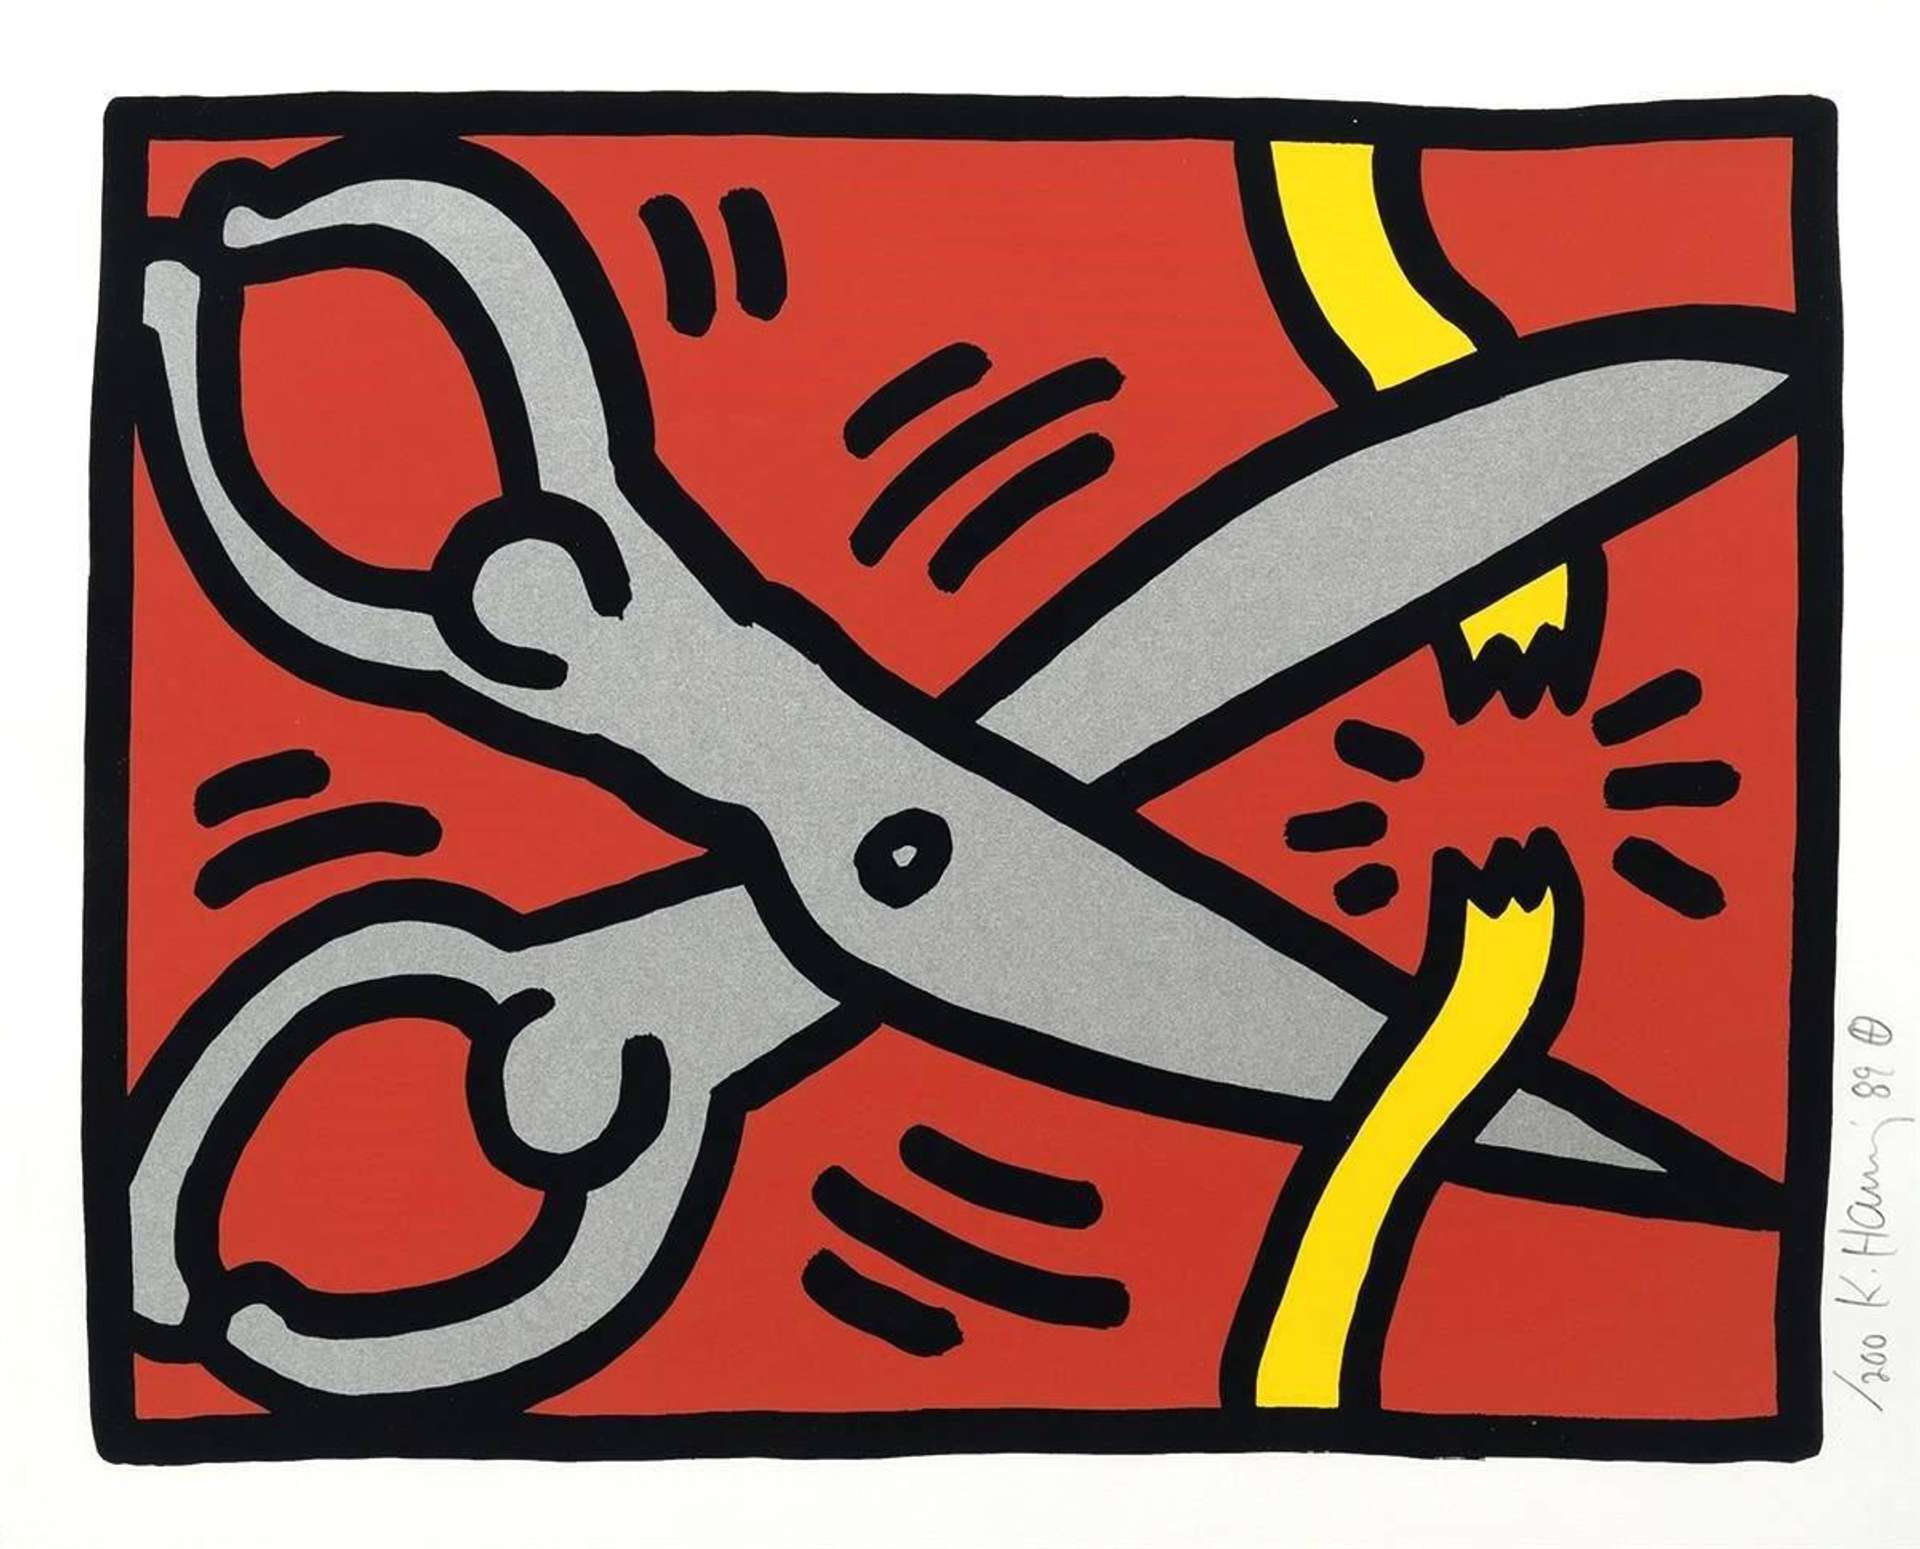 Pop Shop III, Plate III by Keith Haring